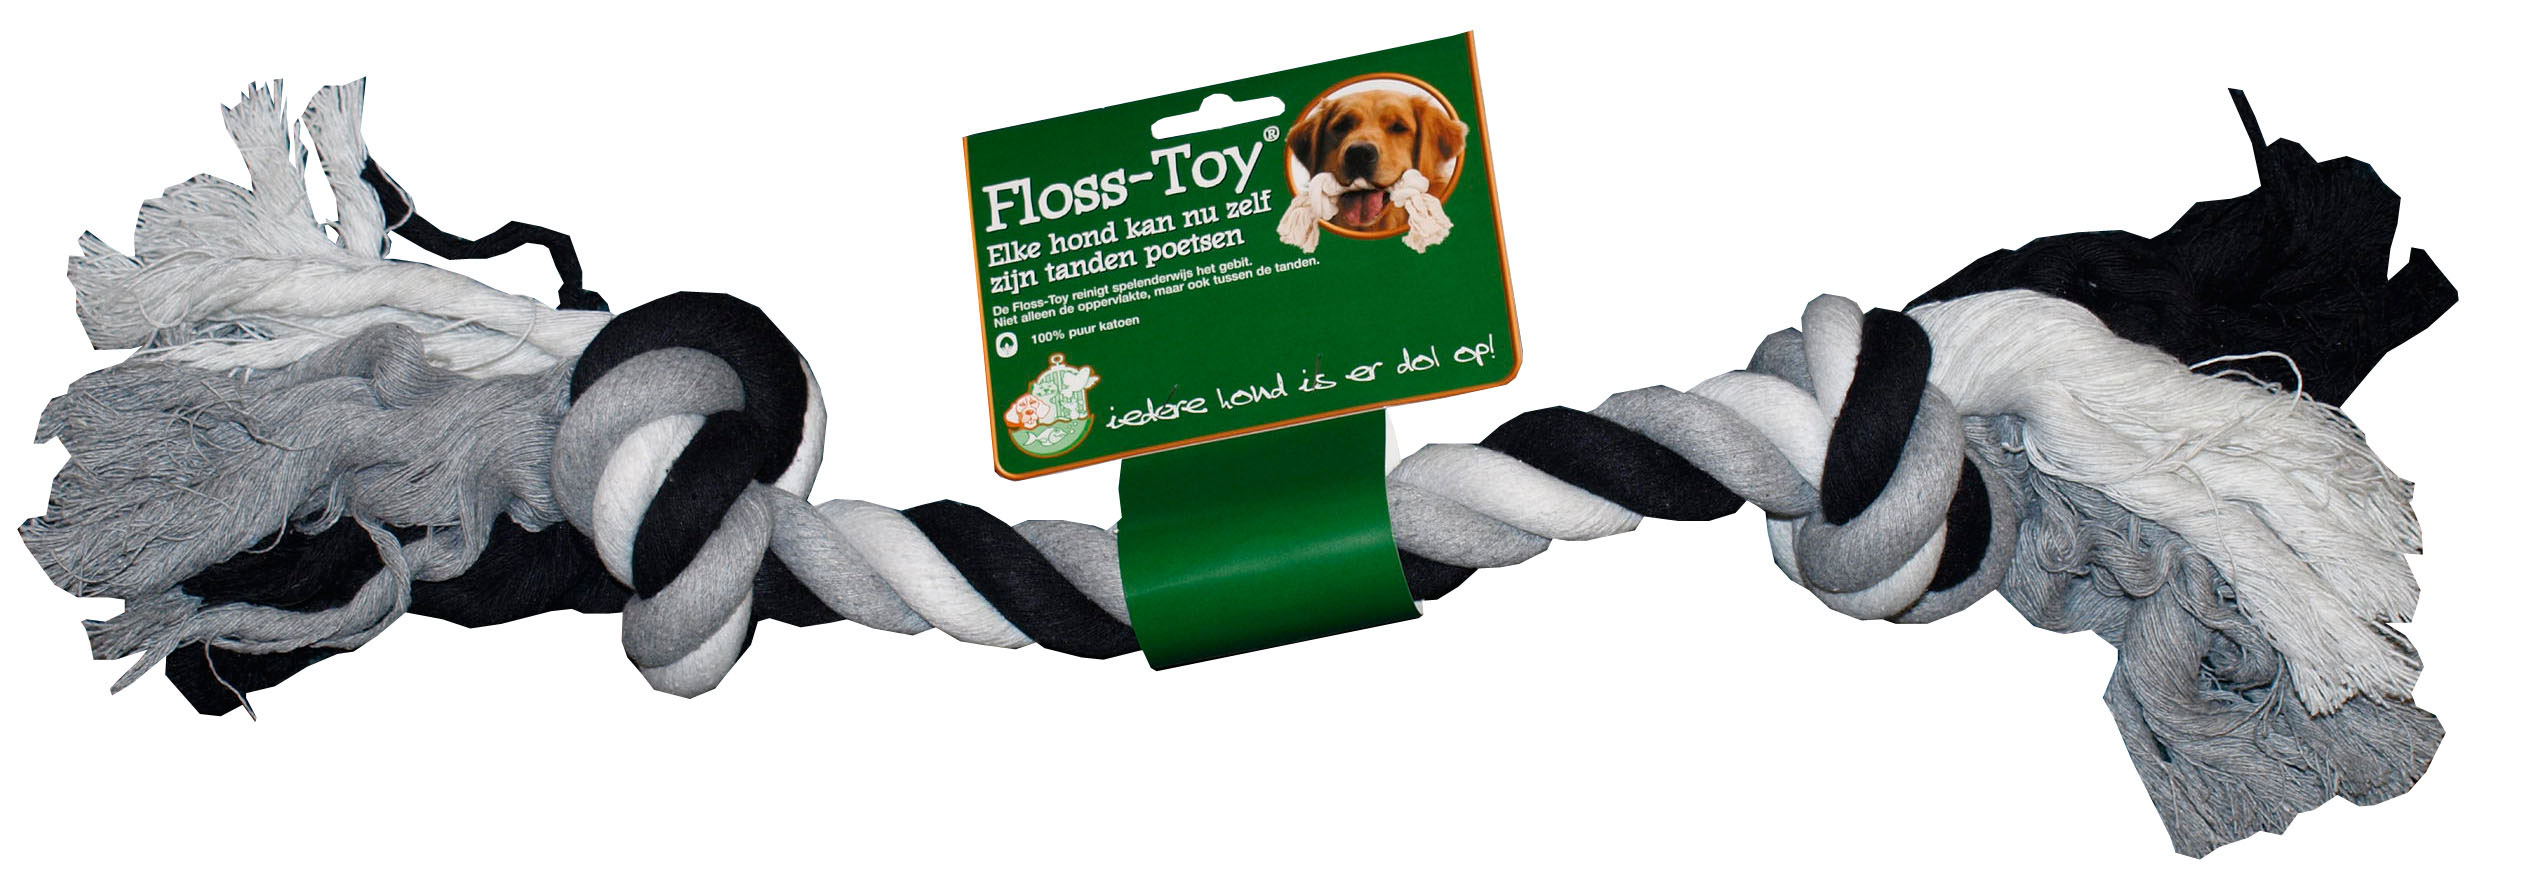 Floss-toy zwart/wit gigant